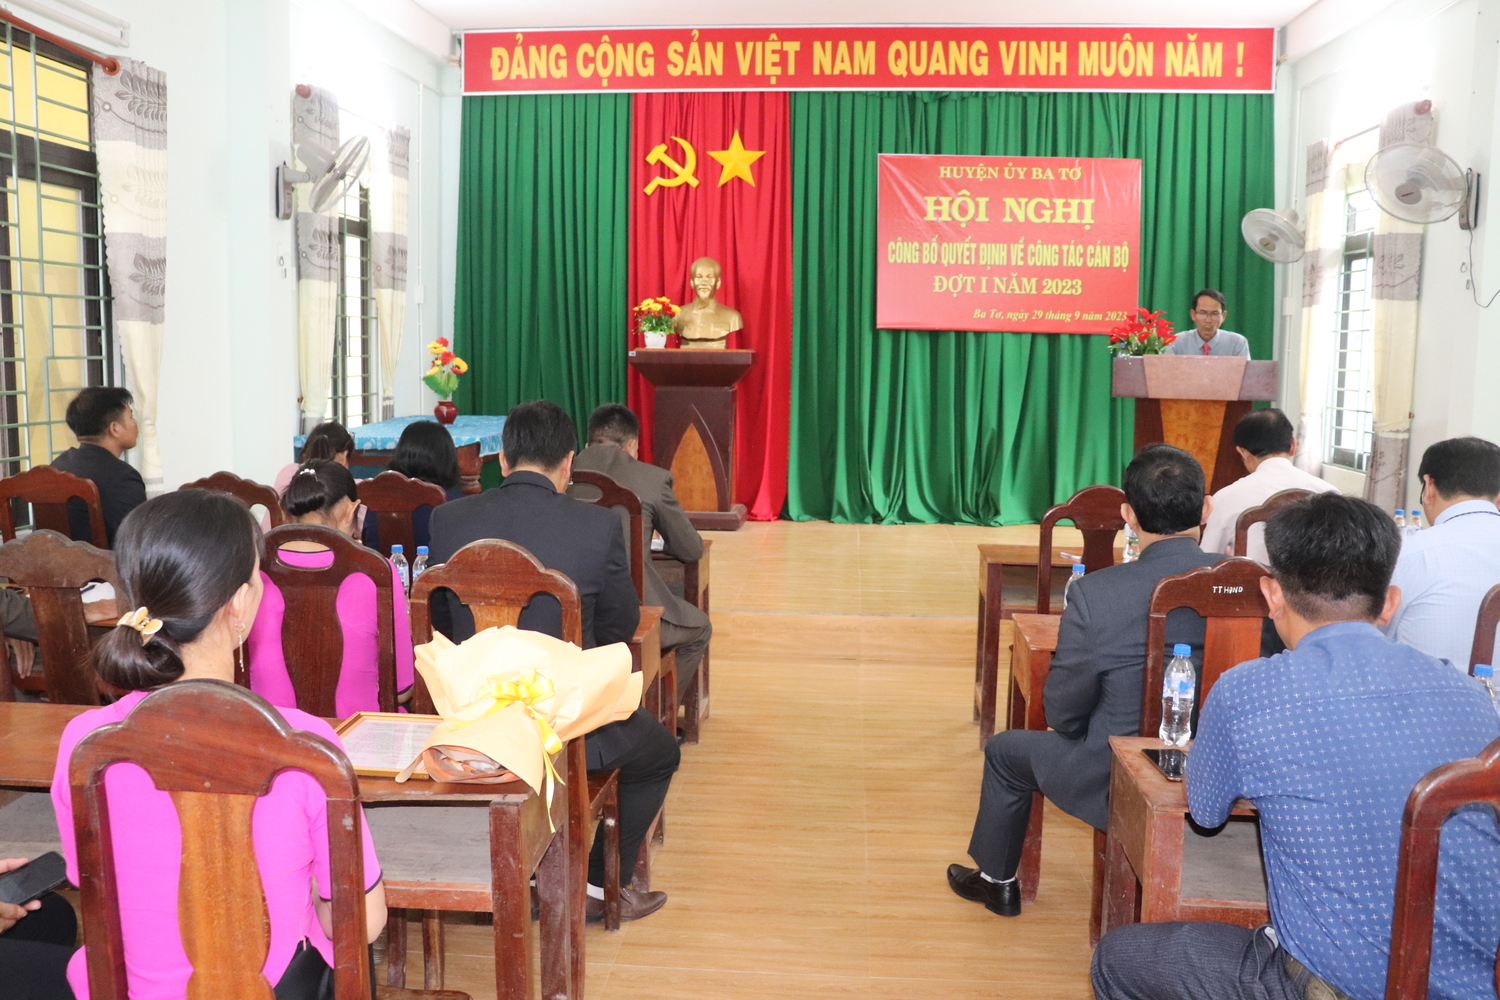 Huyện ủy Ba Tơ tổ chức Hội nghị công bố Quyết định về công tác cán bộ đợt 1, năm 2023 tại xã Ba Tiêu